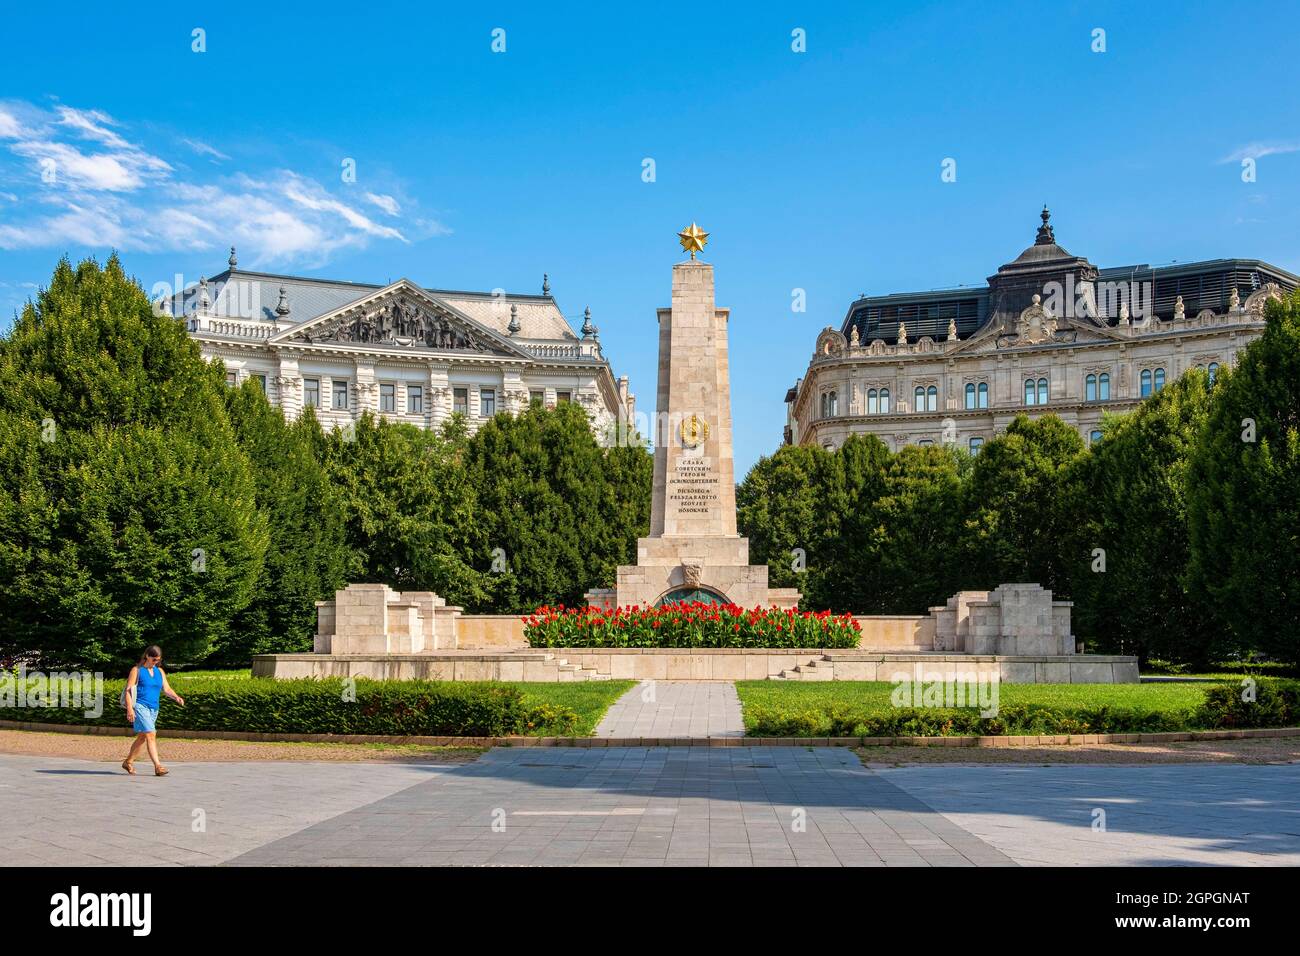 Hungría, Budapest, declarada Patrimonio de la Humanidad por la UNESCO, distrito de Pest, Plaza de la Libertad, monumento a los héroes soviéticos liberando Hungría Foto de stock